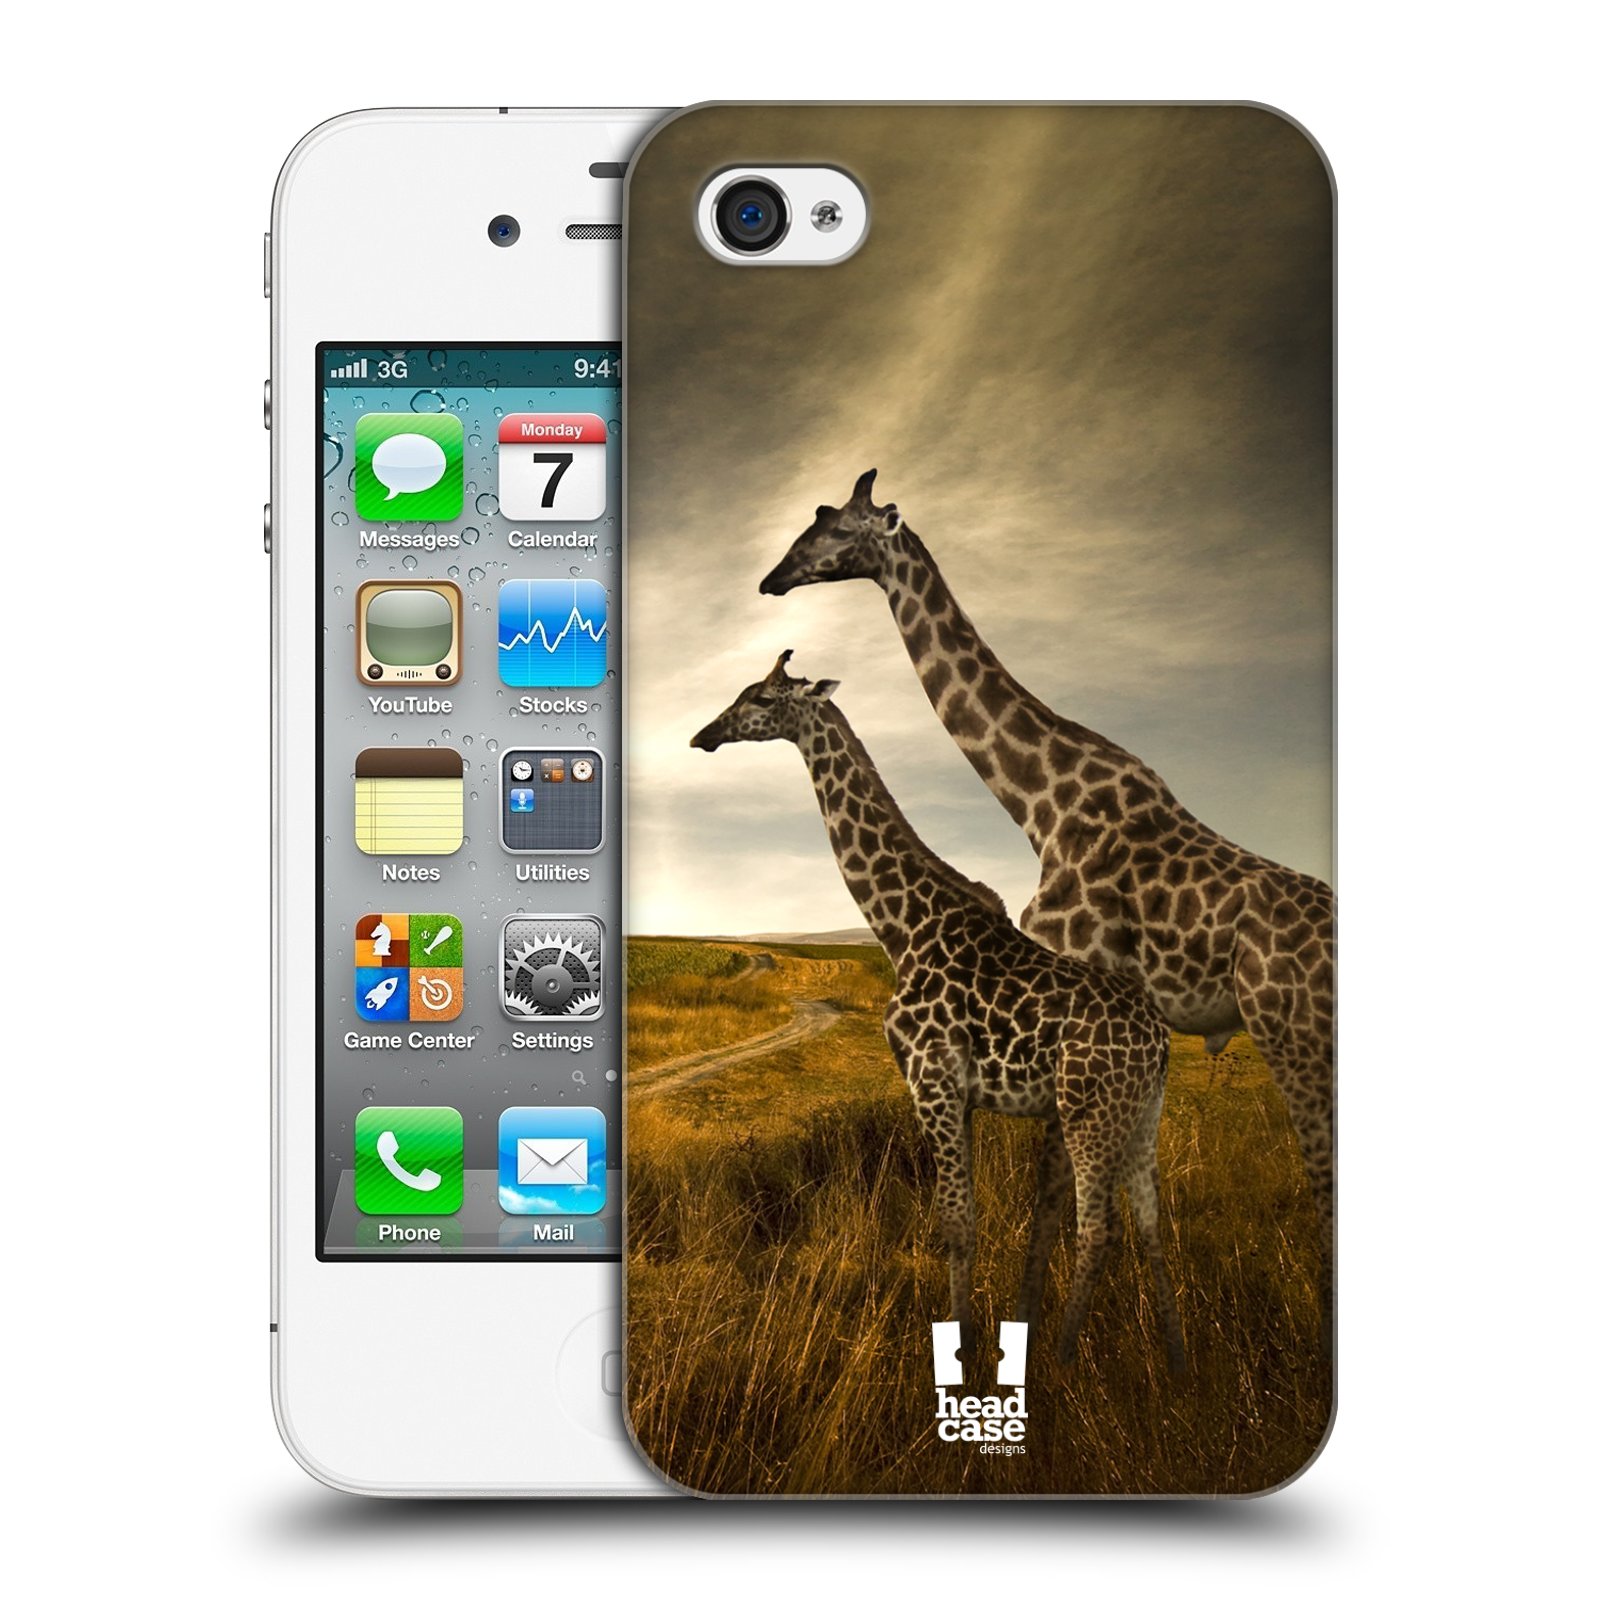 Zadní obal pro mobil Apple Iphone 4/4S - HEAD CASE - Svět zvířat žirafy